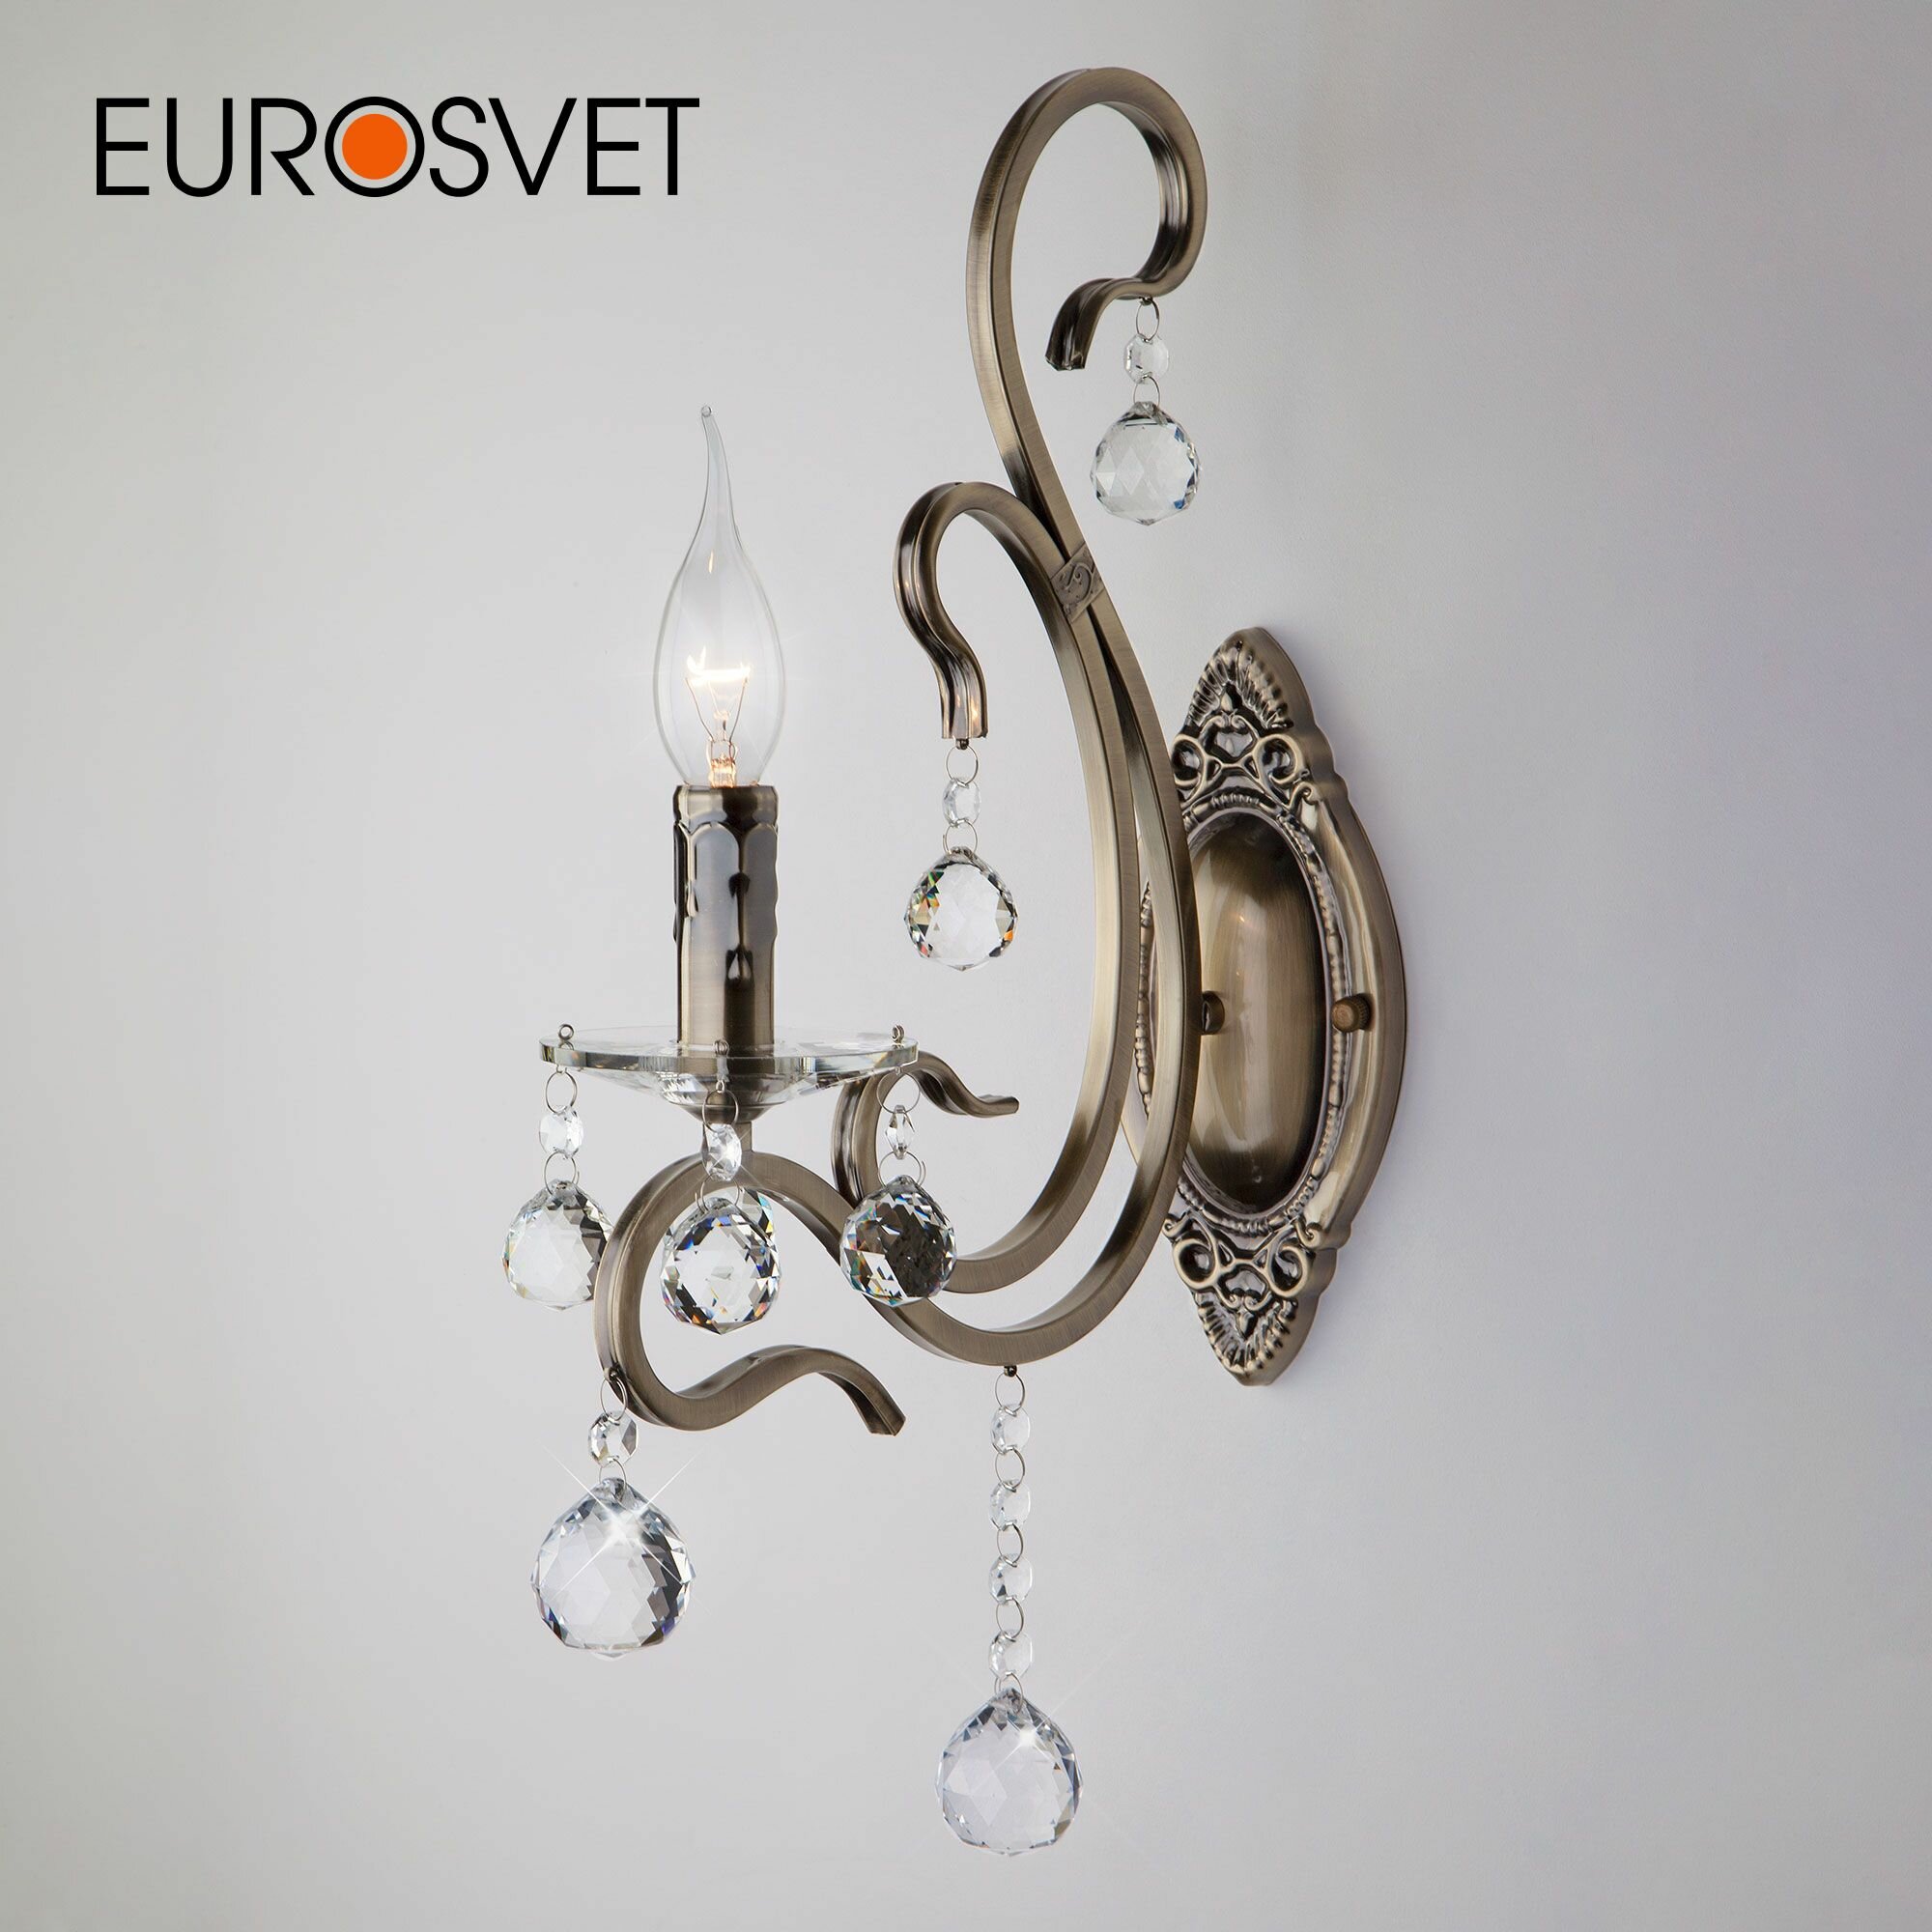 Бра Eurosvet Ernin 12505/1 античная бронза, E14, 40 Вт, кол-во ламп: 1 шт.